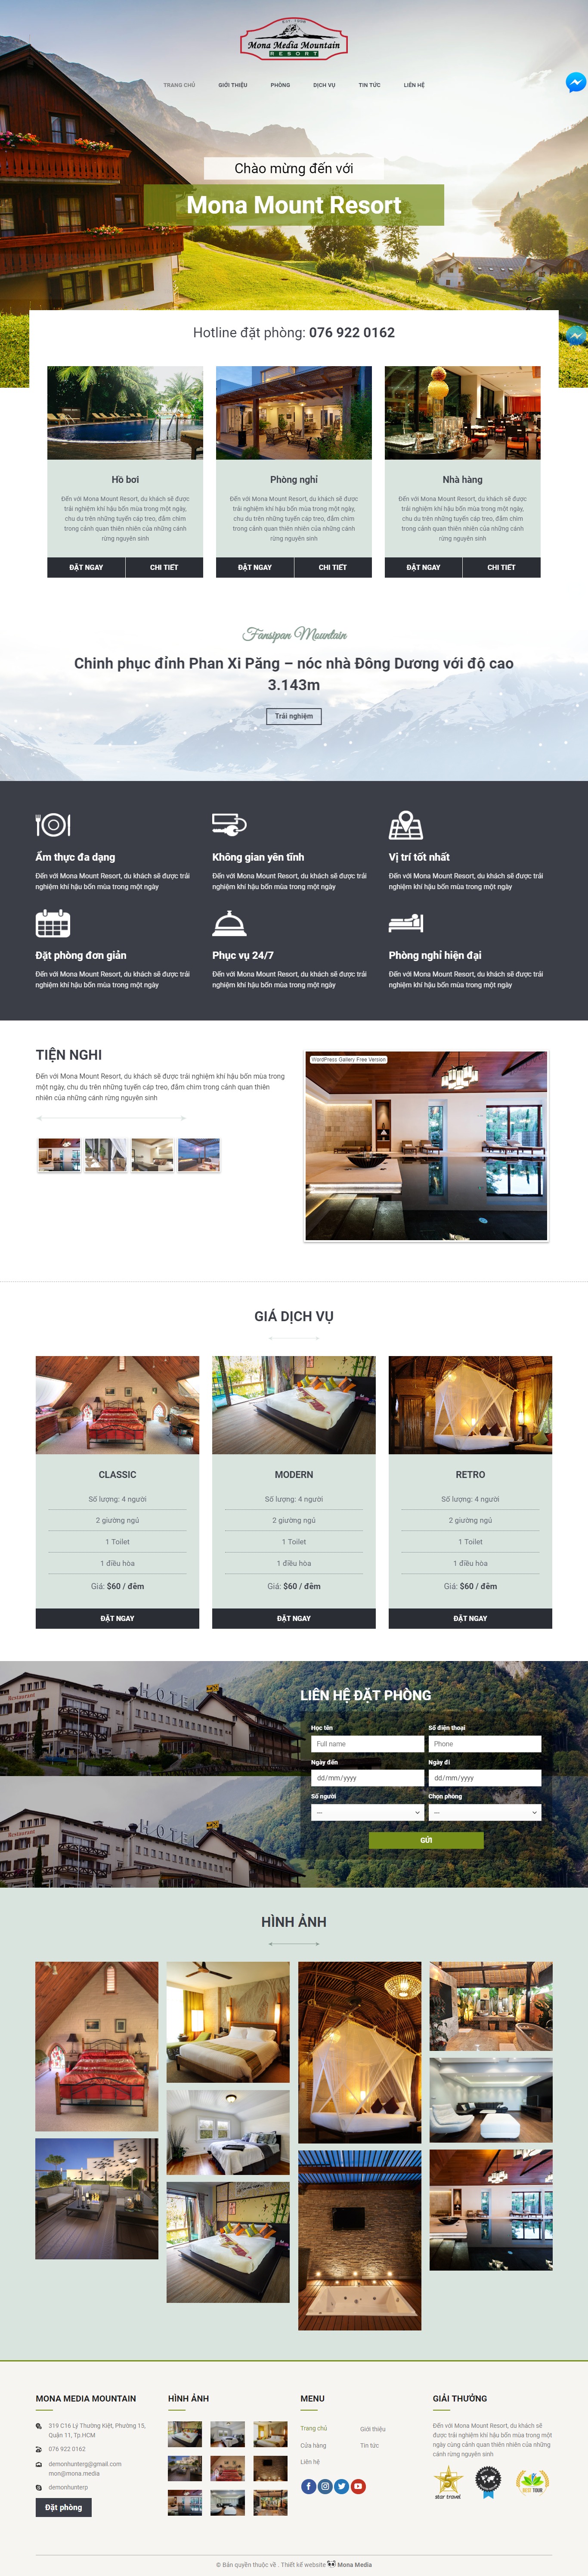 Mẫu website dịch vụ đặt phòng cho resort